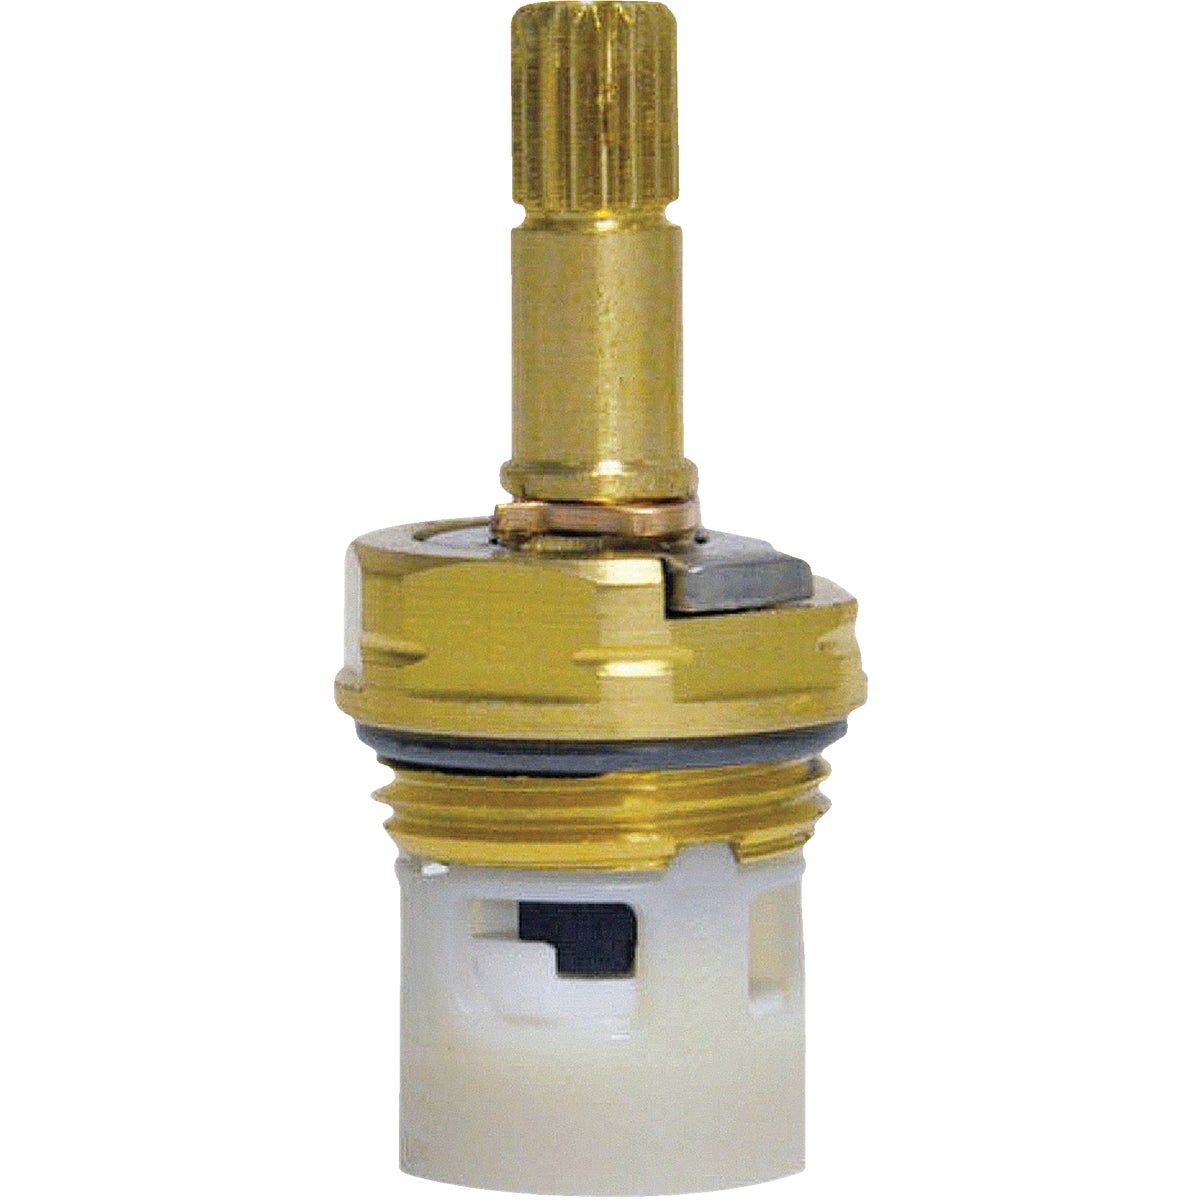 Item 401836, Repair your leaky faucet with this Danco 4Z-24H/C stem cartridge.